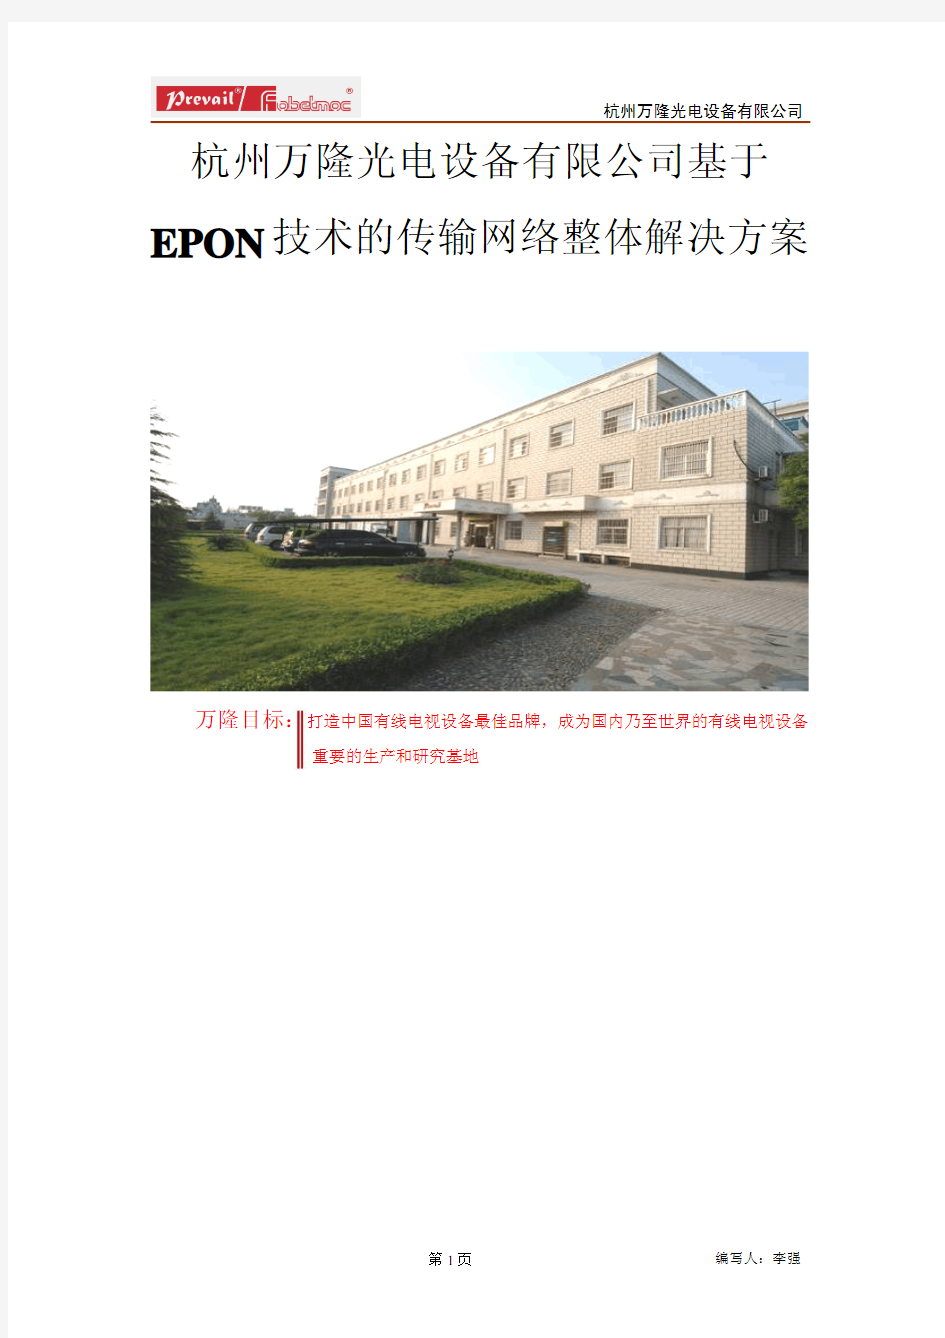 杭州万隆光电设备有限公司基于EPON技术的传输网络整体解决方案